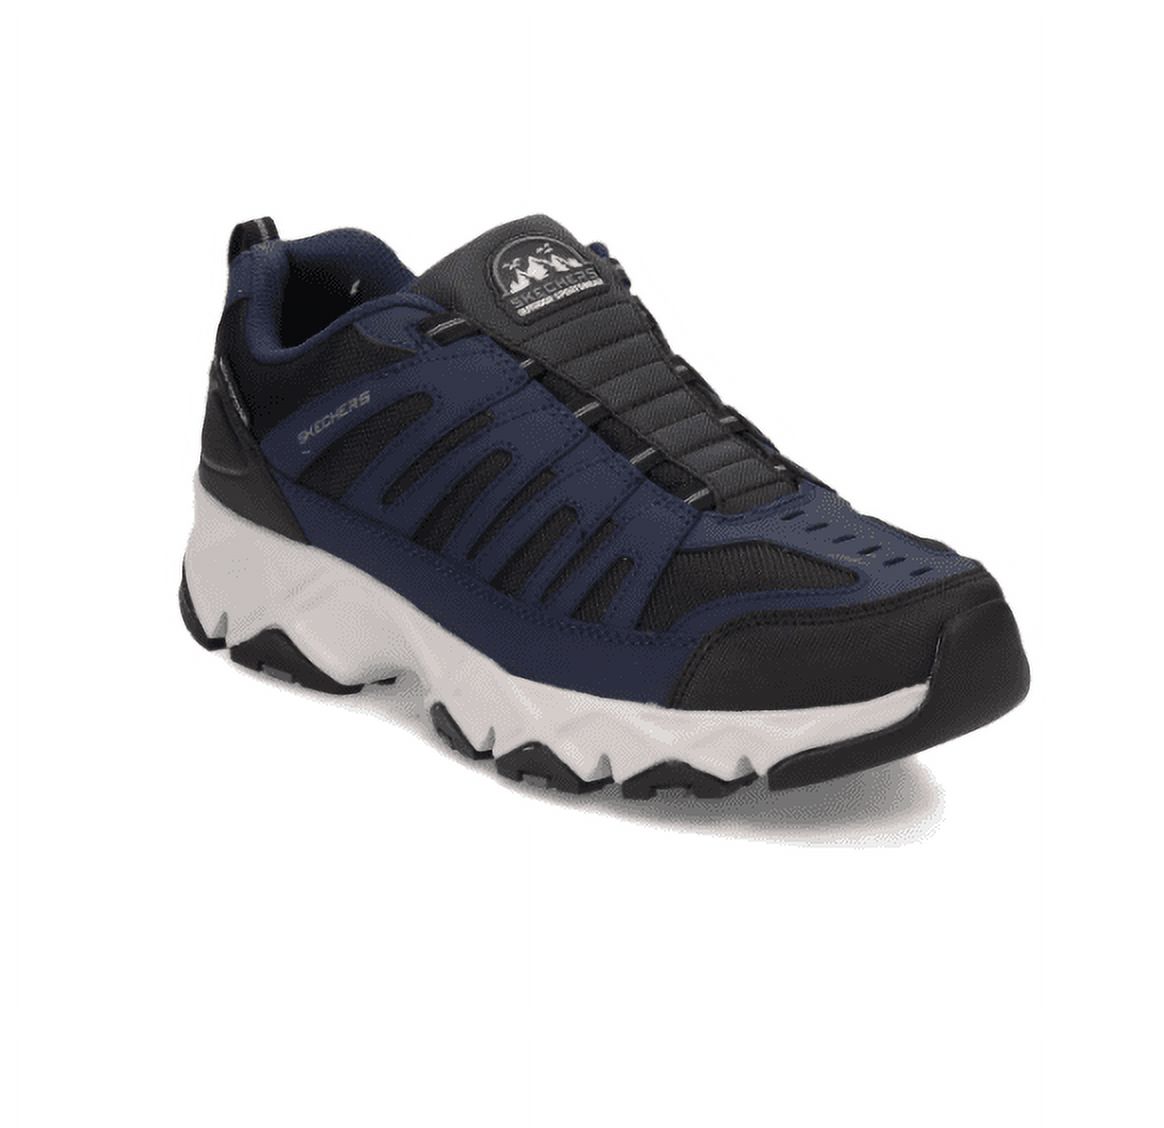 Skechers Men's Crossbar Slip-on Sneaker, Wide Width Available - image 1 of 4